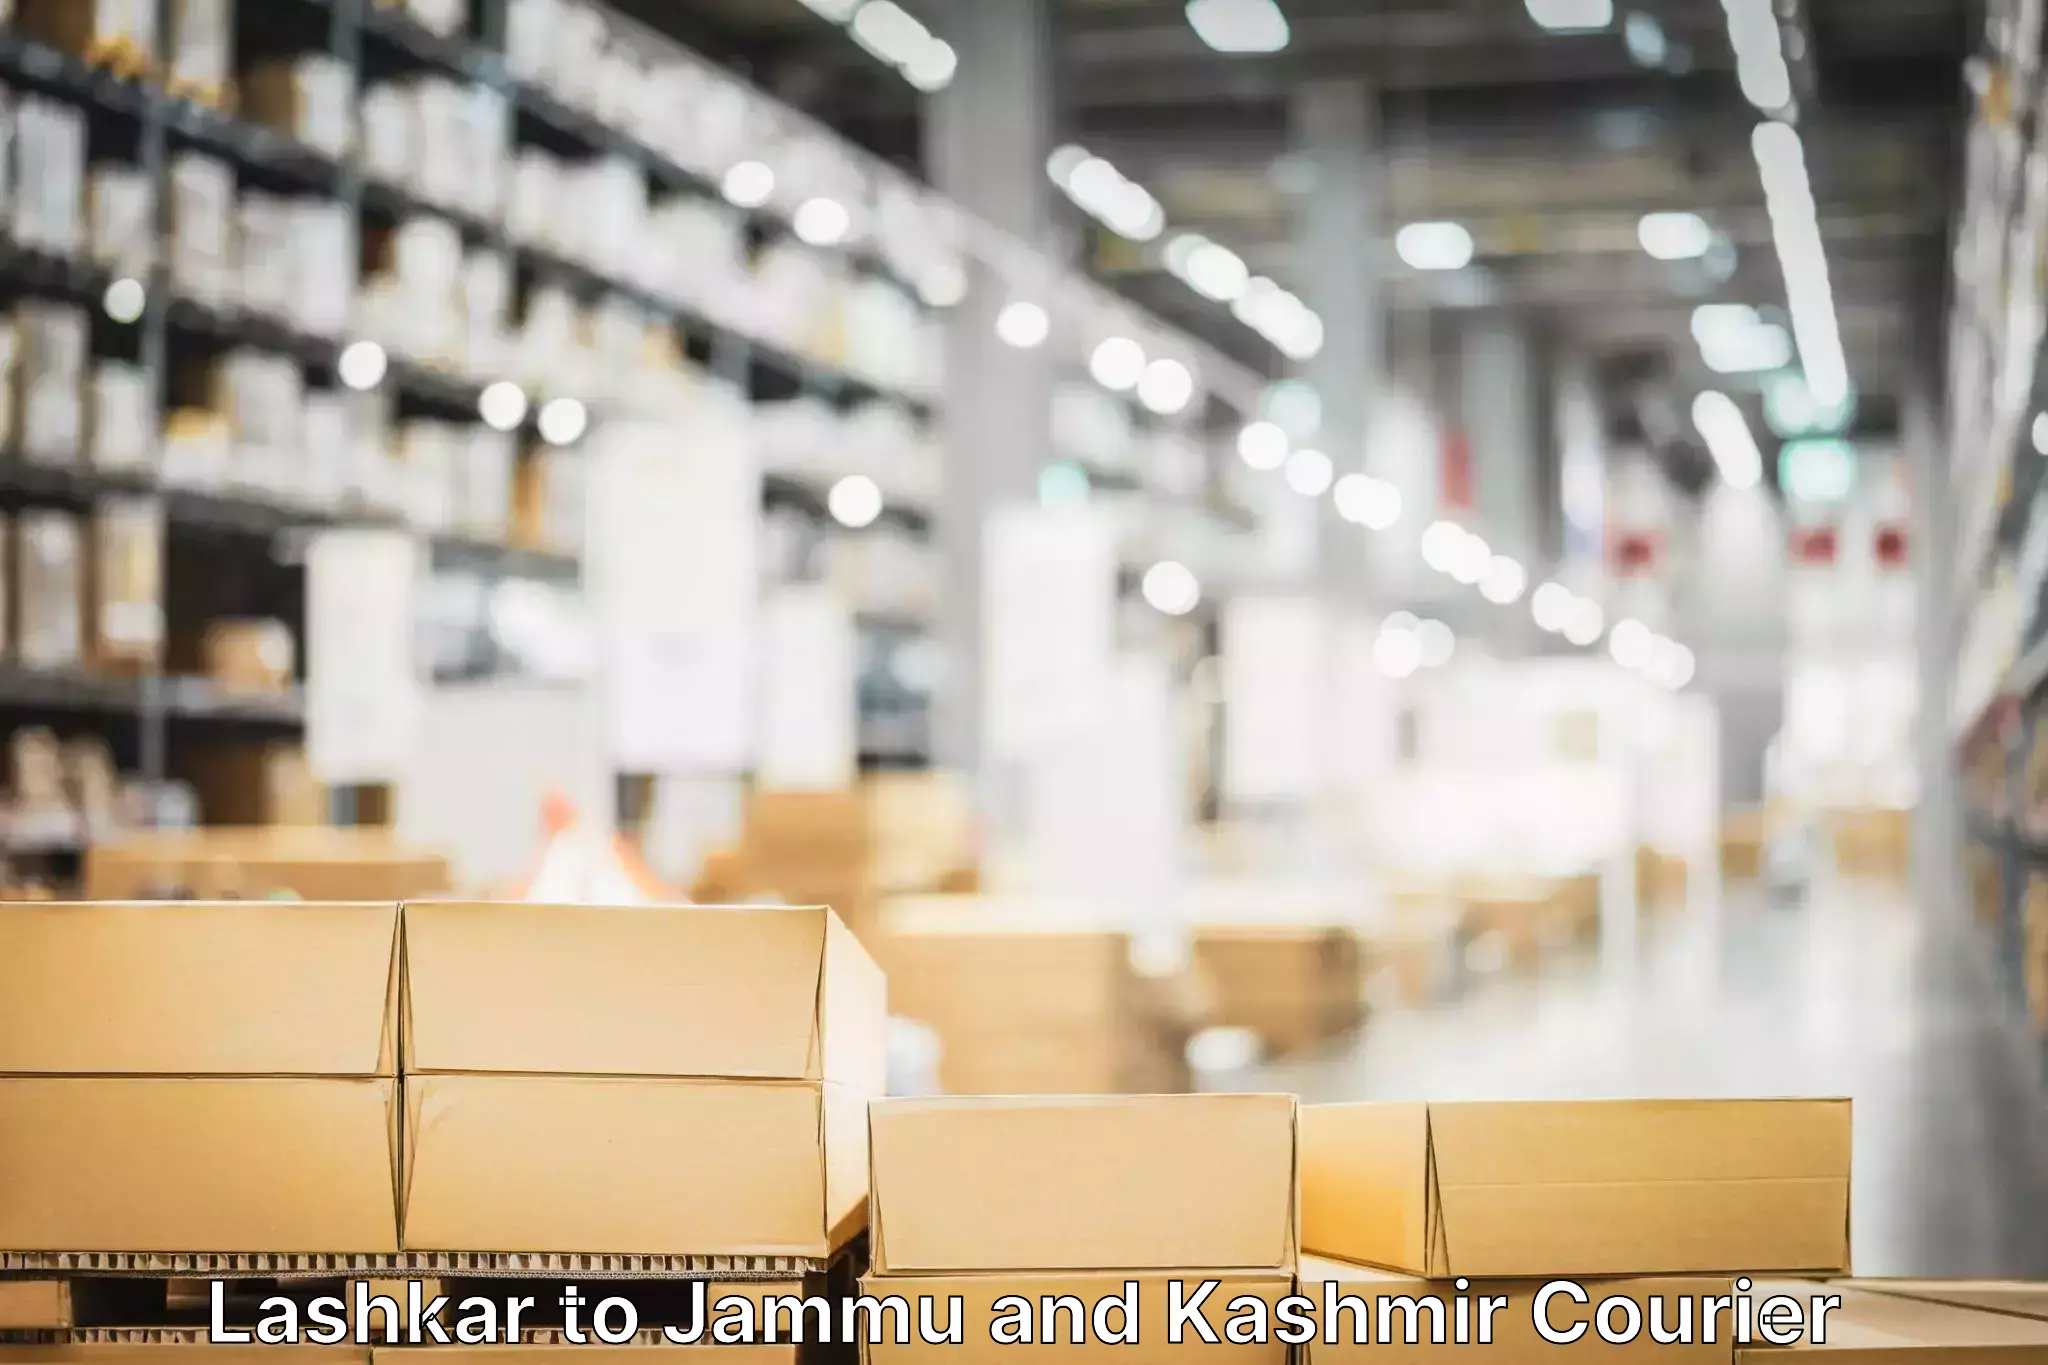 Global parcel delivery Lashkar to Jammu and Kashmir